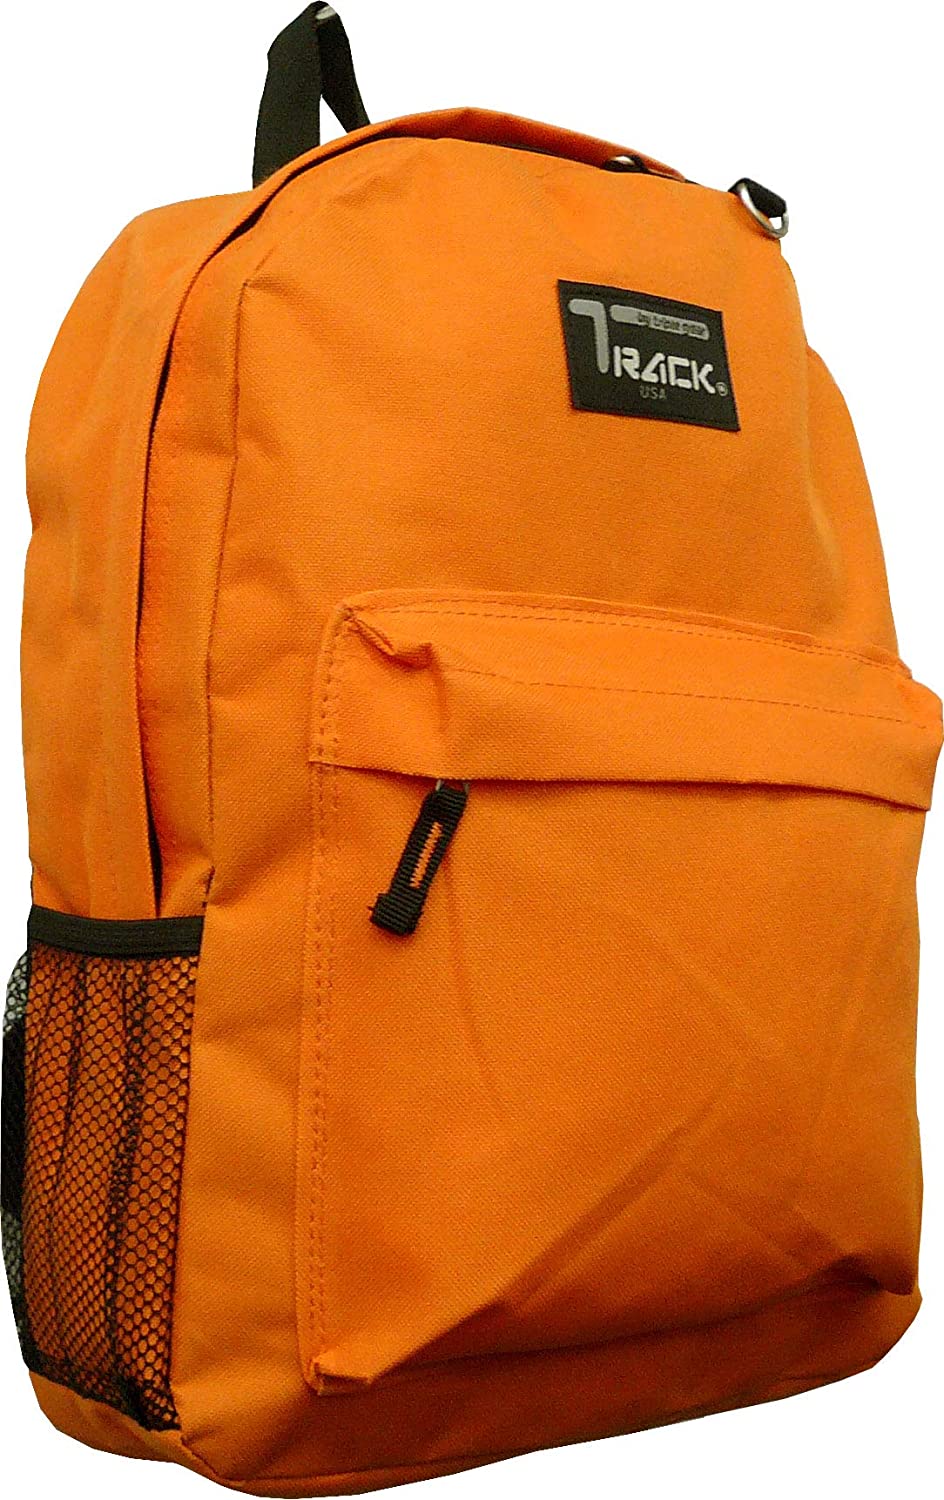 Track Classic Backpack TB205 (Orange)